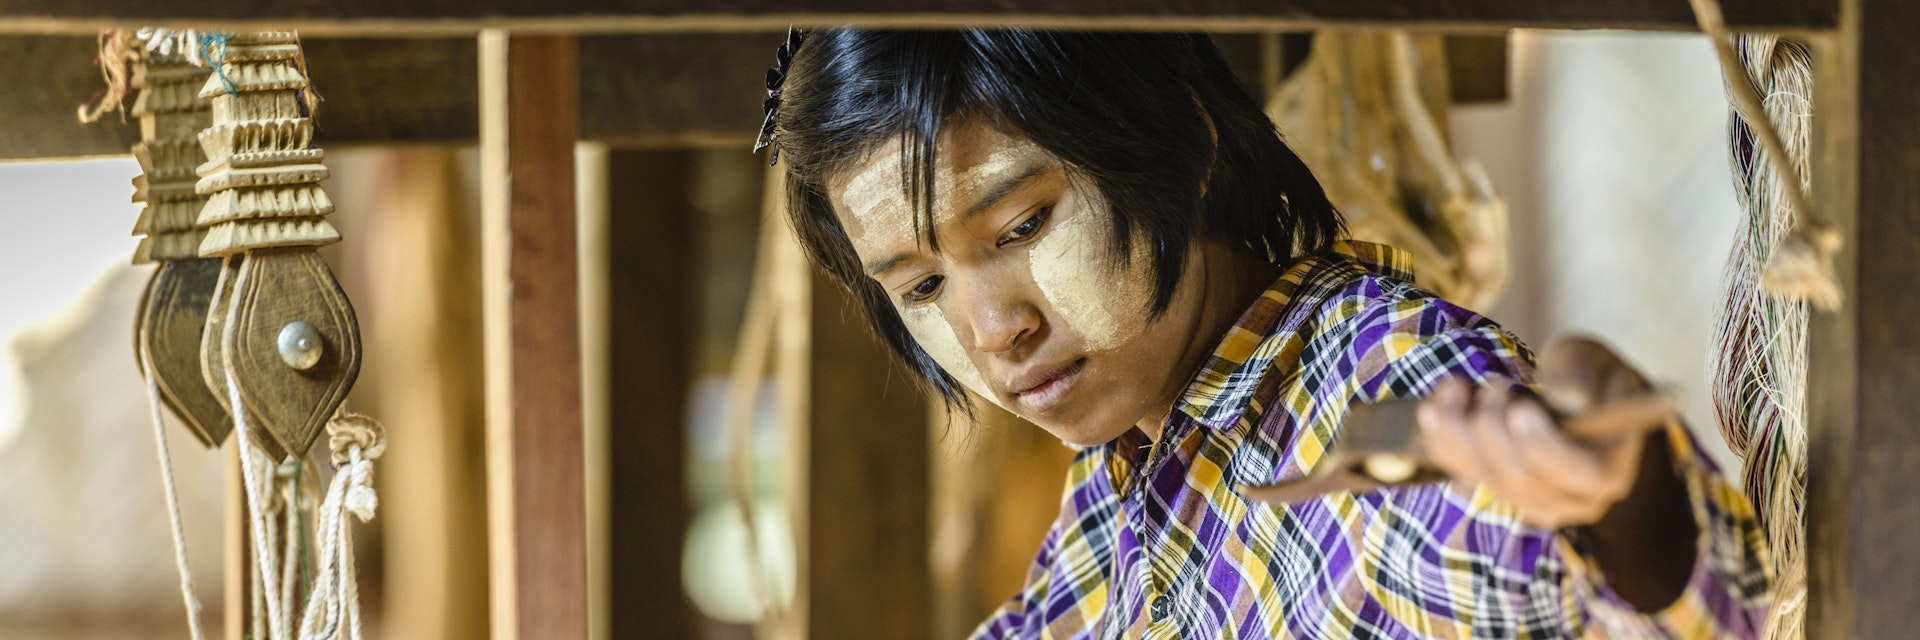 Asian girl weaving fabric